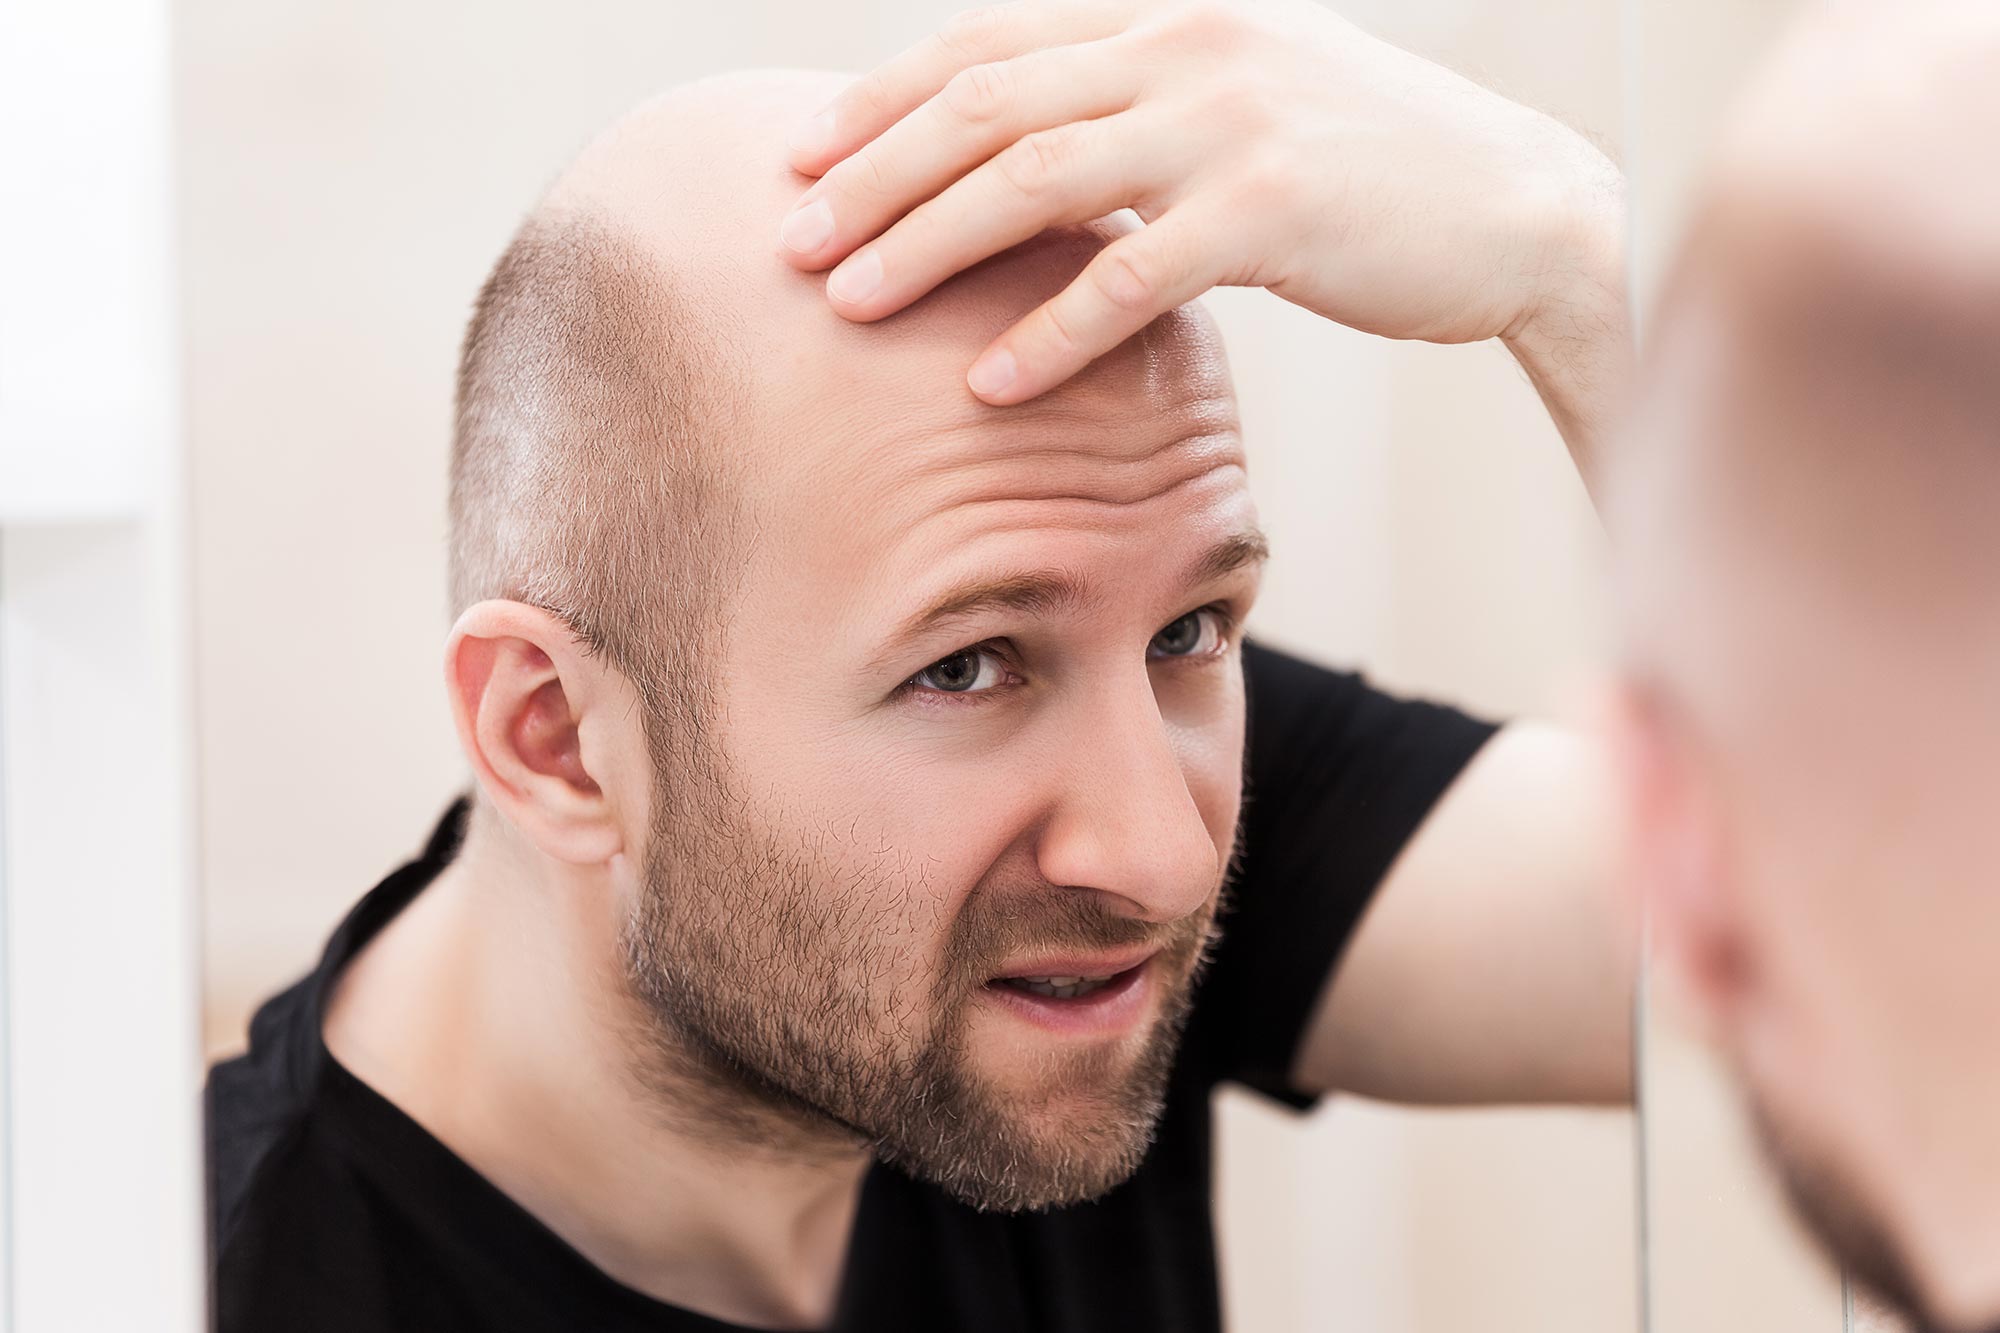 Good news for Bald People